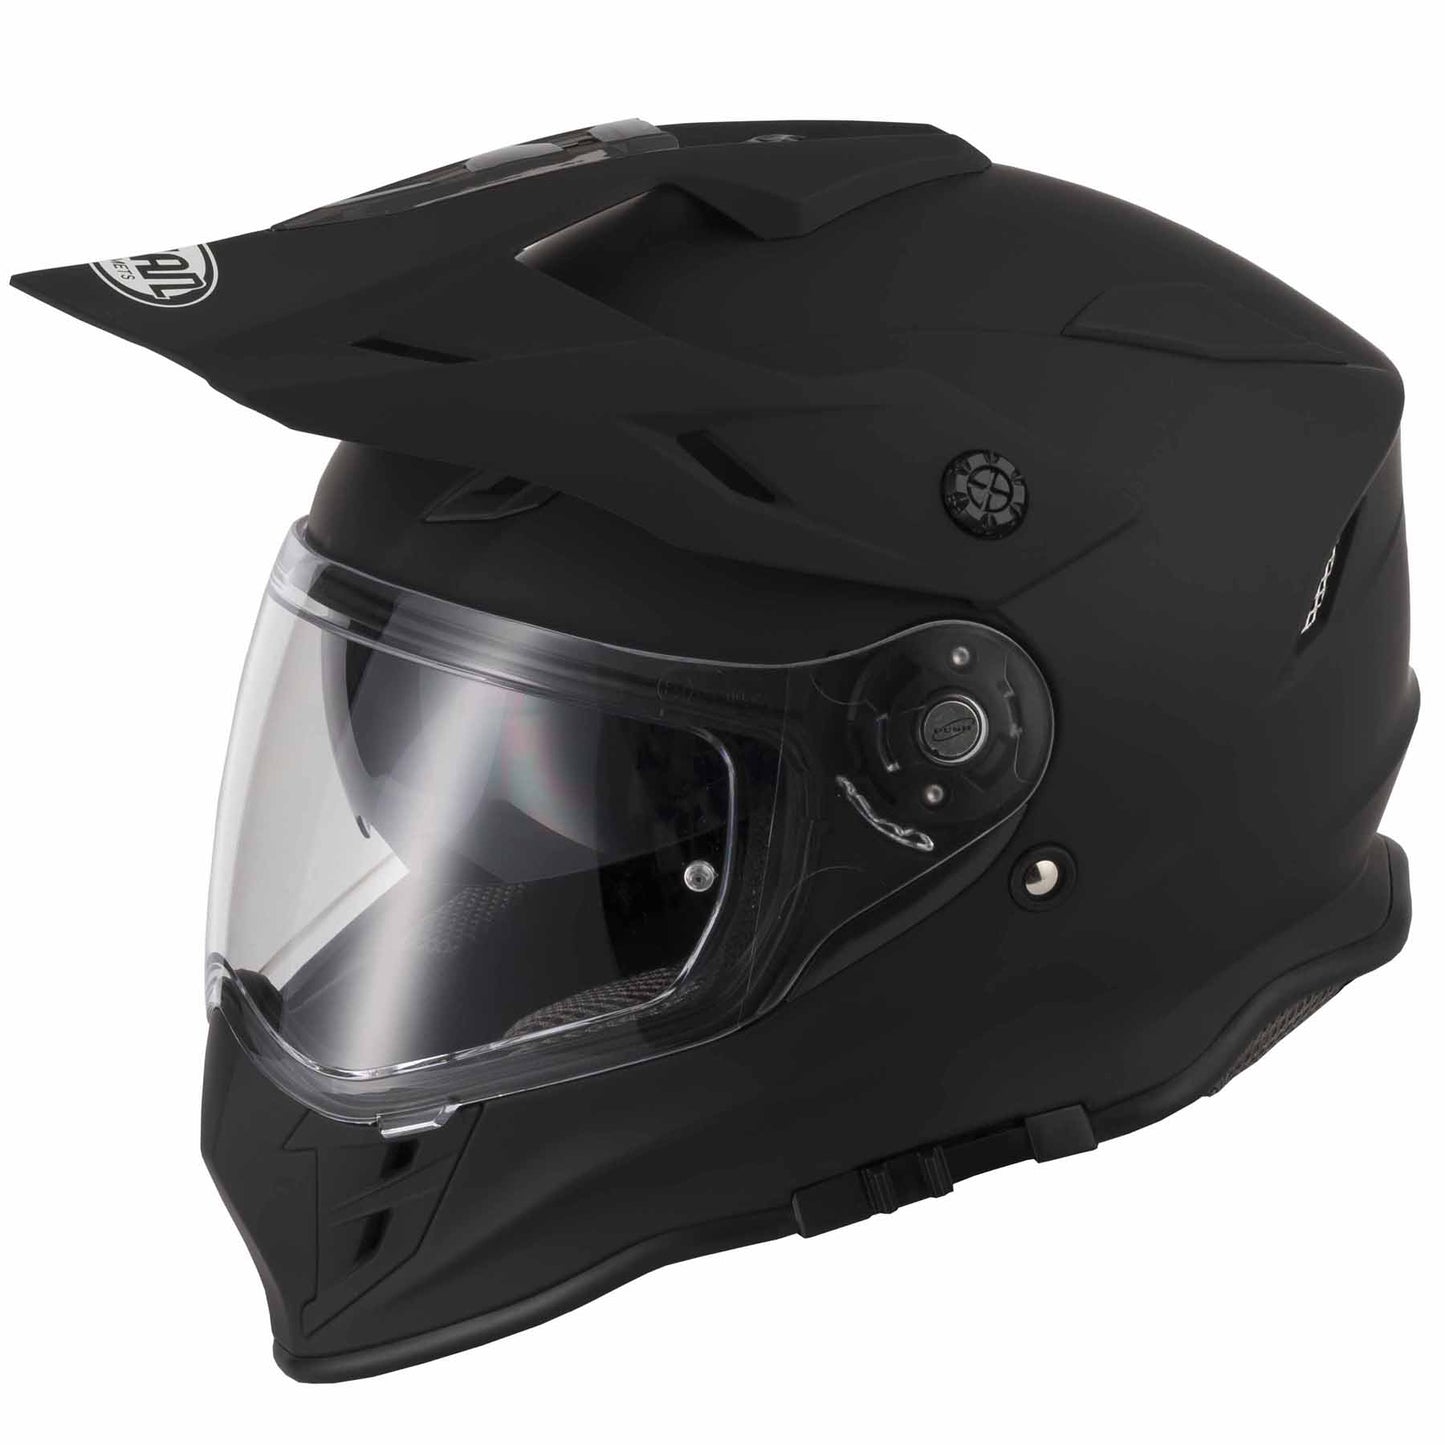 Riderwear | VCAN H331 Motocross Dual Sport Helmet - Matt Black